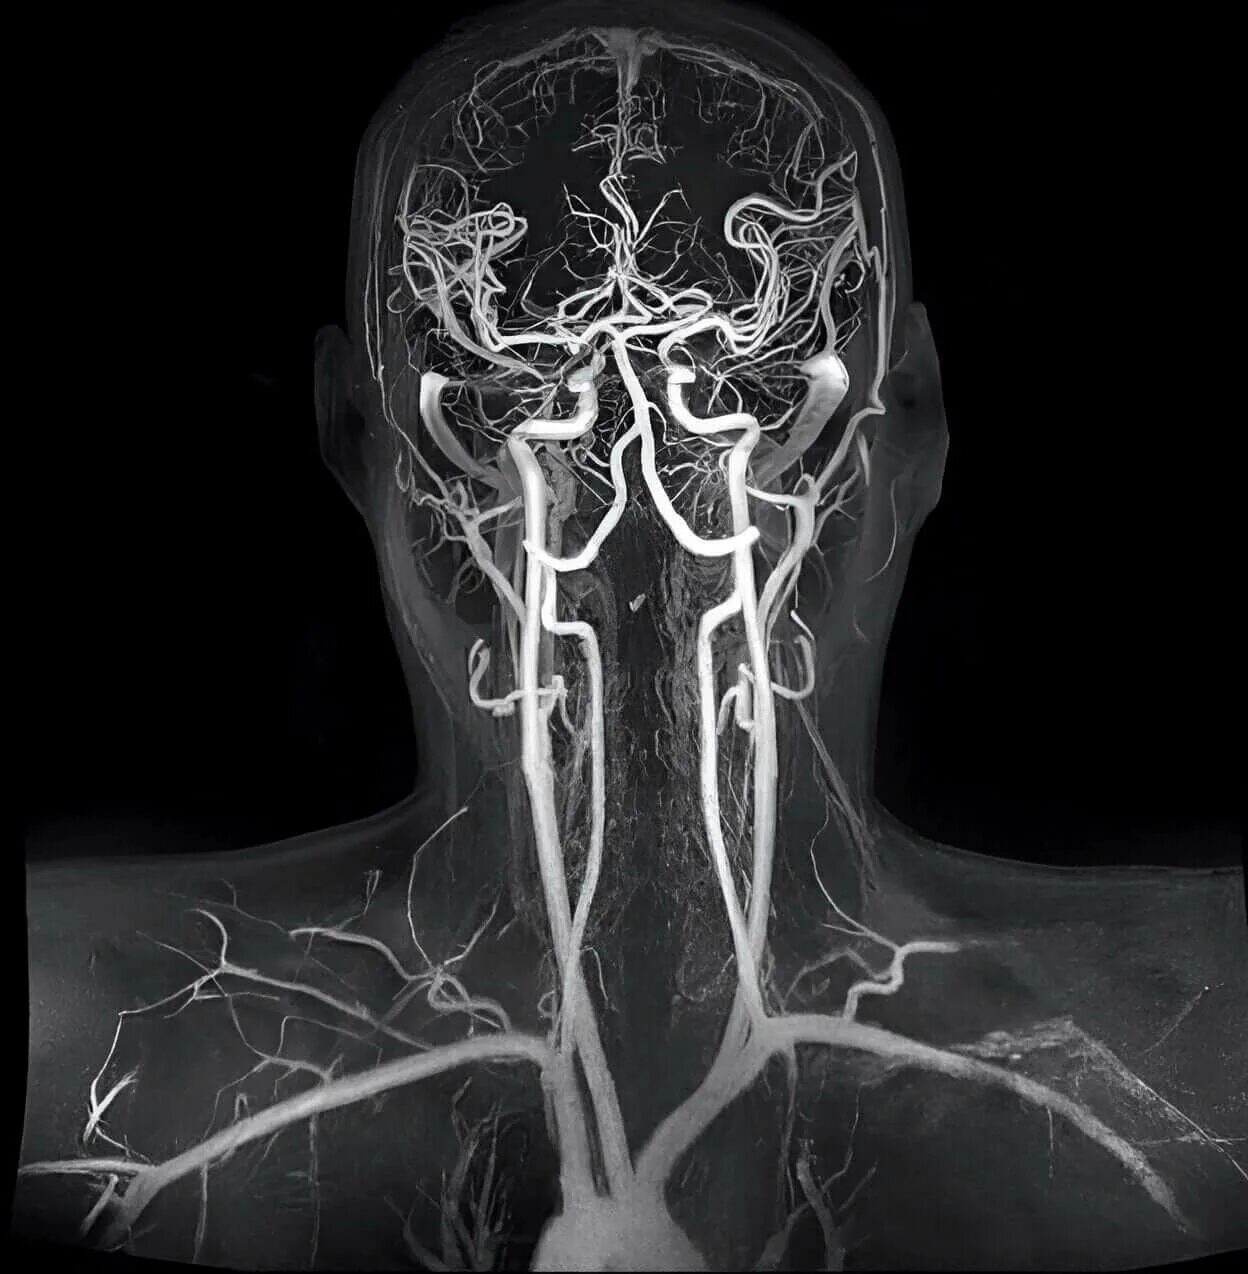 Кт ангиография брахиоцефальных артерий. Мрт ангиография артерий головного мозга. МР-ангиография сосудов головного мозга. Компьютерно-томографическая ангиография сосудов головного мозга.